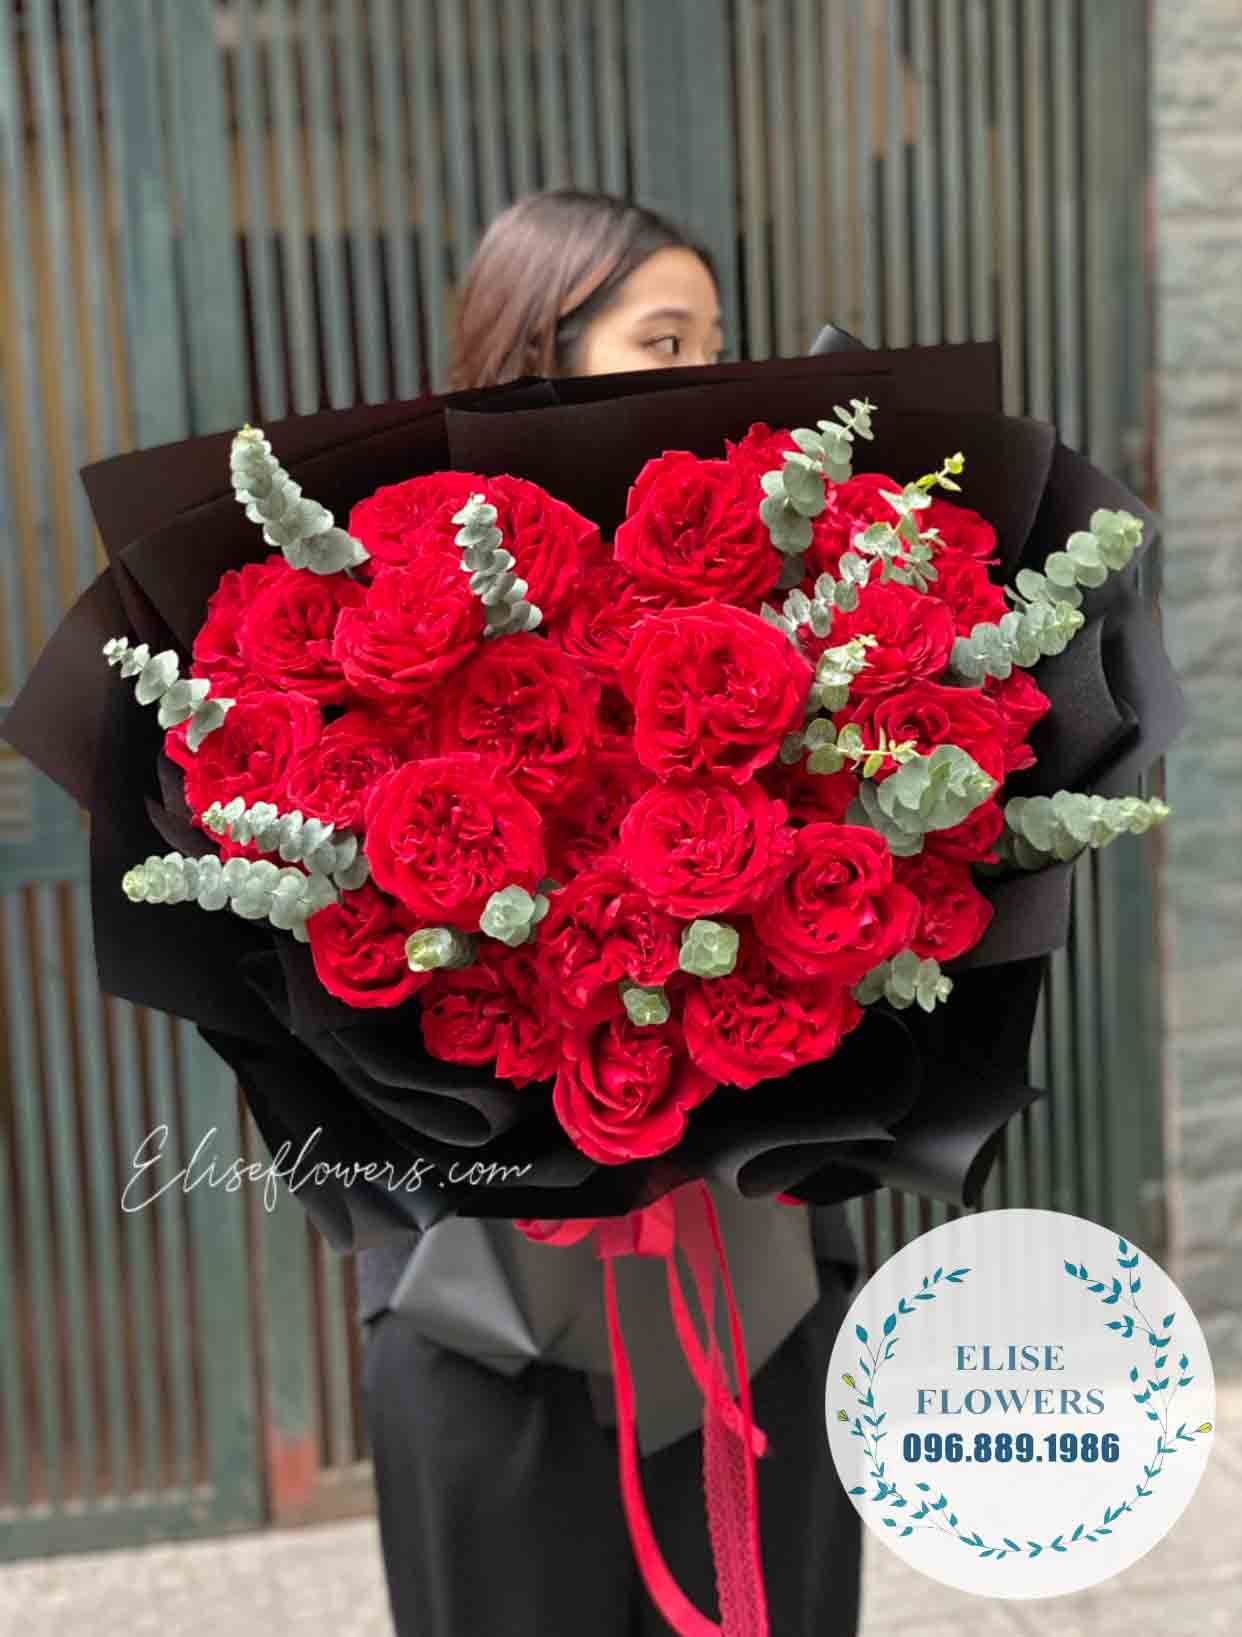 Bó hoa hồng đỏ đẹp là món quà tuyệt vời cho người thân yêu của bạn. Với sắc đỏ rực rỡ và hương thơm ngọt ngào, bó hoa sẽ thể hiện được tình cảm chân thành của bạn. Hãy đến và ngắm nhìn hình ảnh bó hoa hồng đỏ đẹp này, bạn sẽ không thể rời mắt.